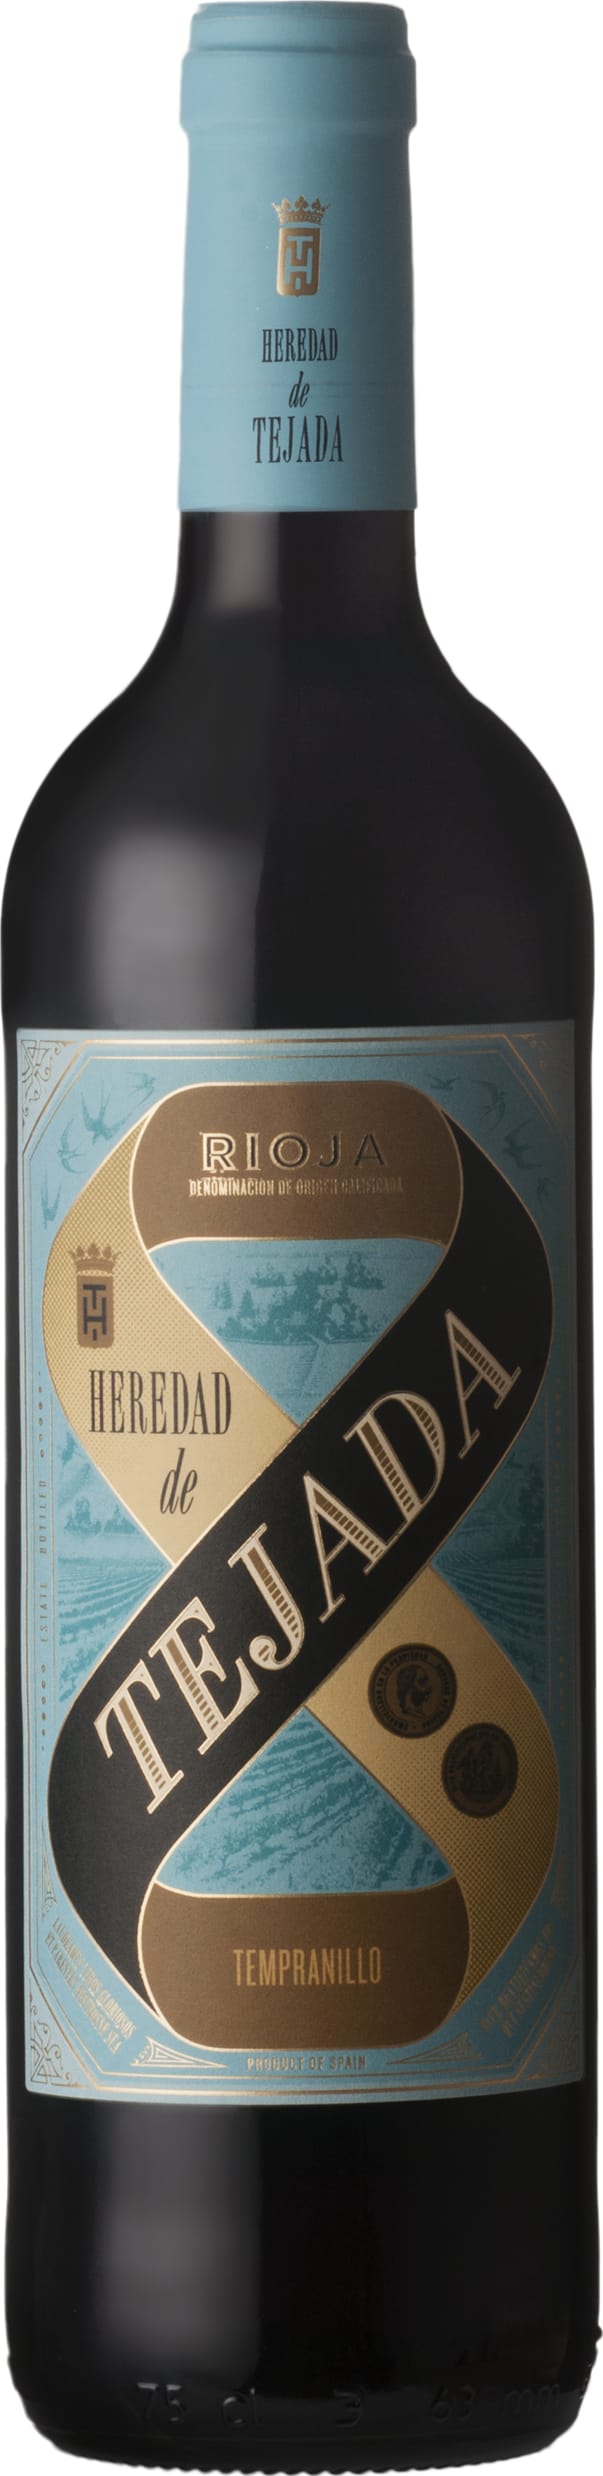 Vintae Rioja Tempranillo Heredad de Tejada 2022 75cl - Buy Vintae Wines from GREAT WINES DIRECT wine shop